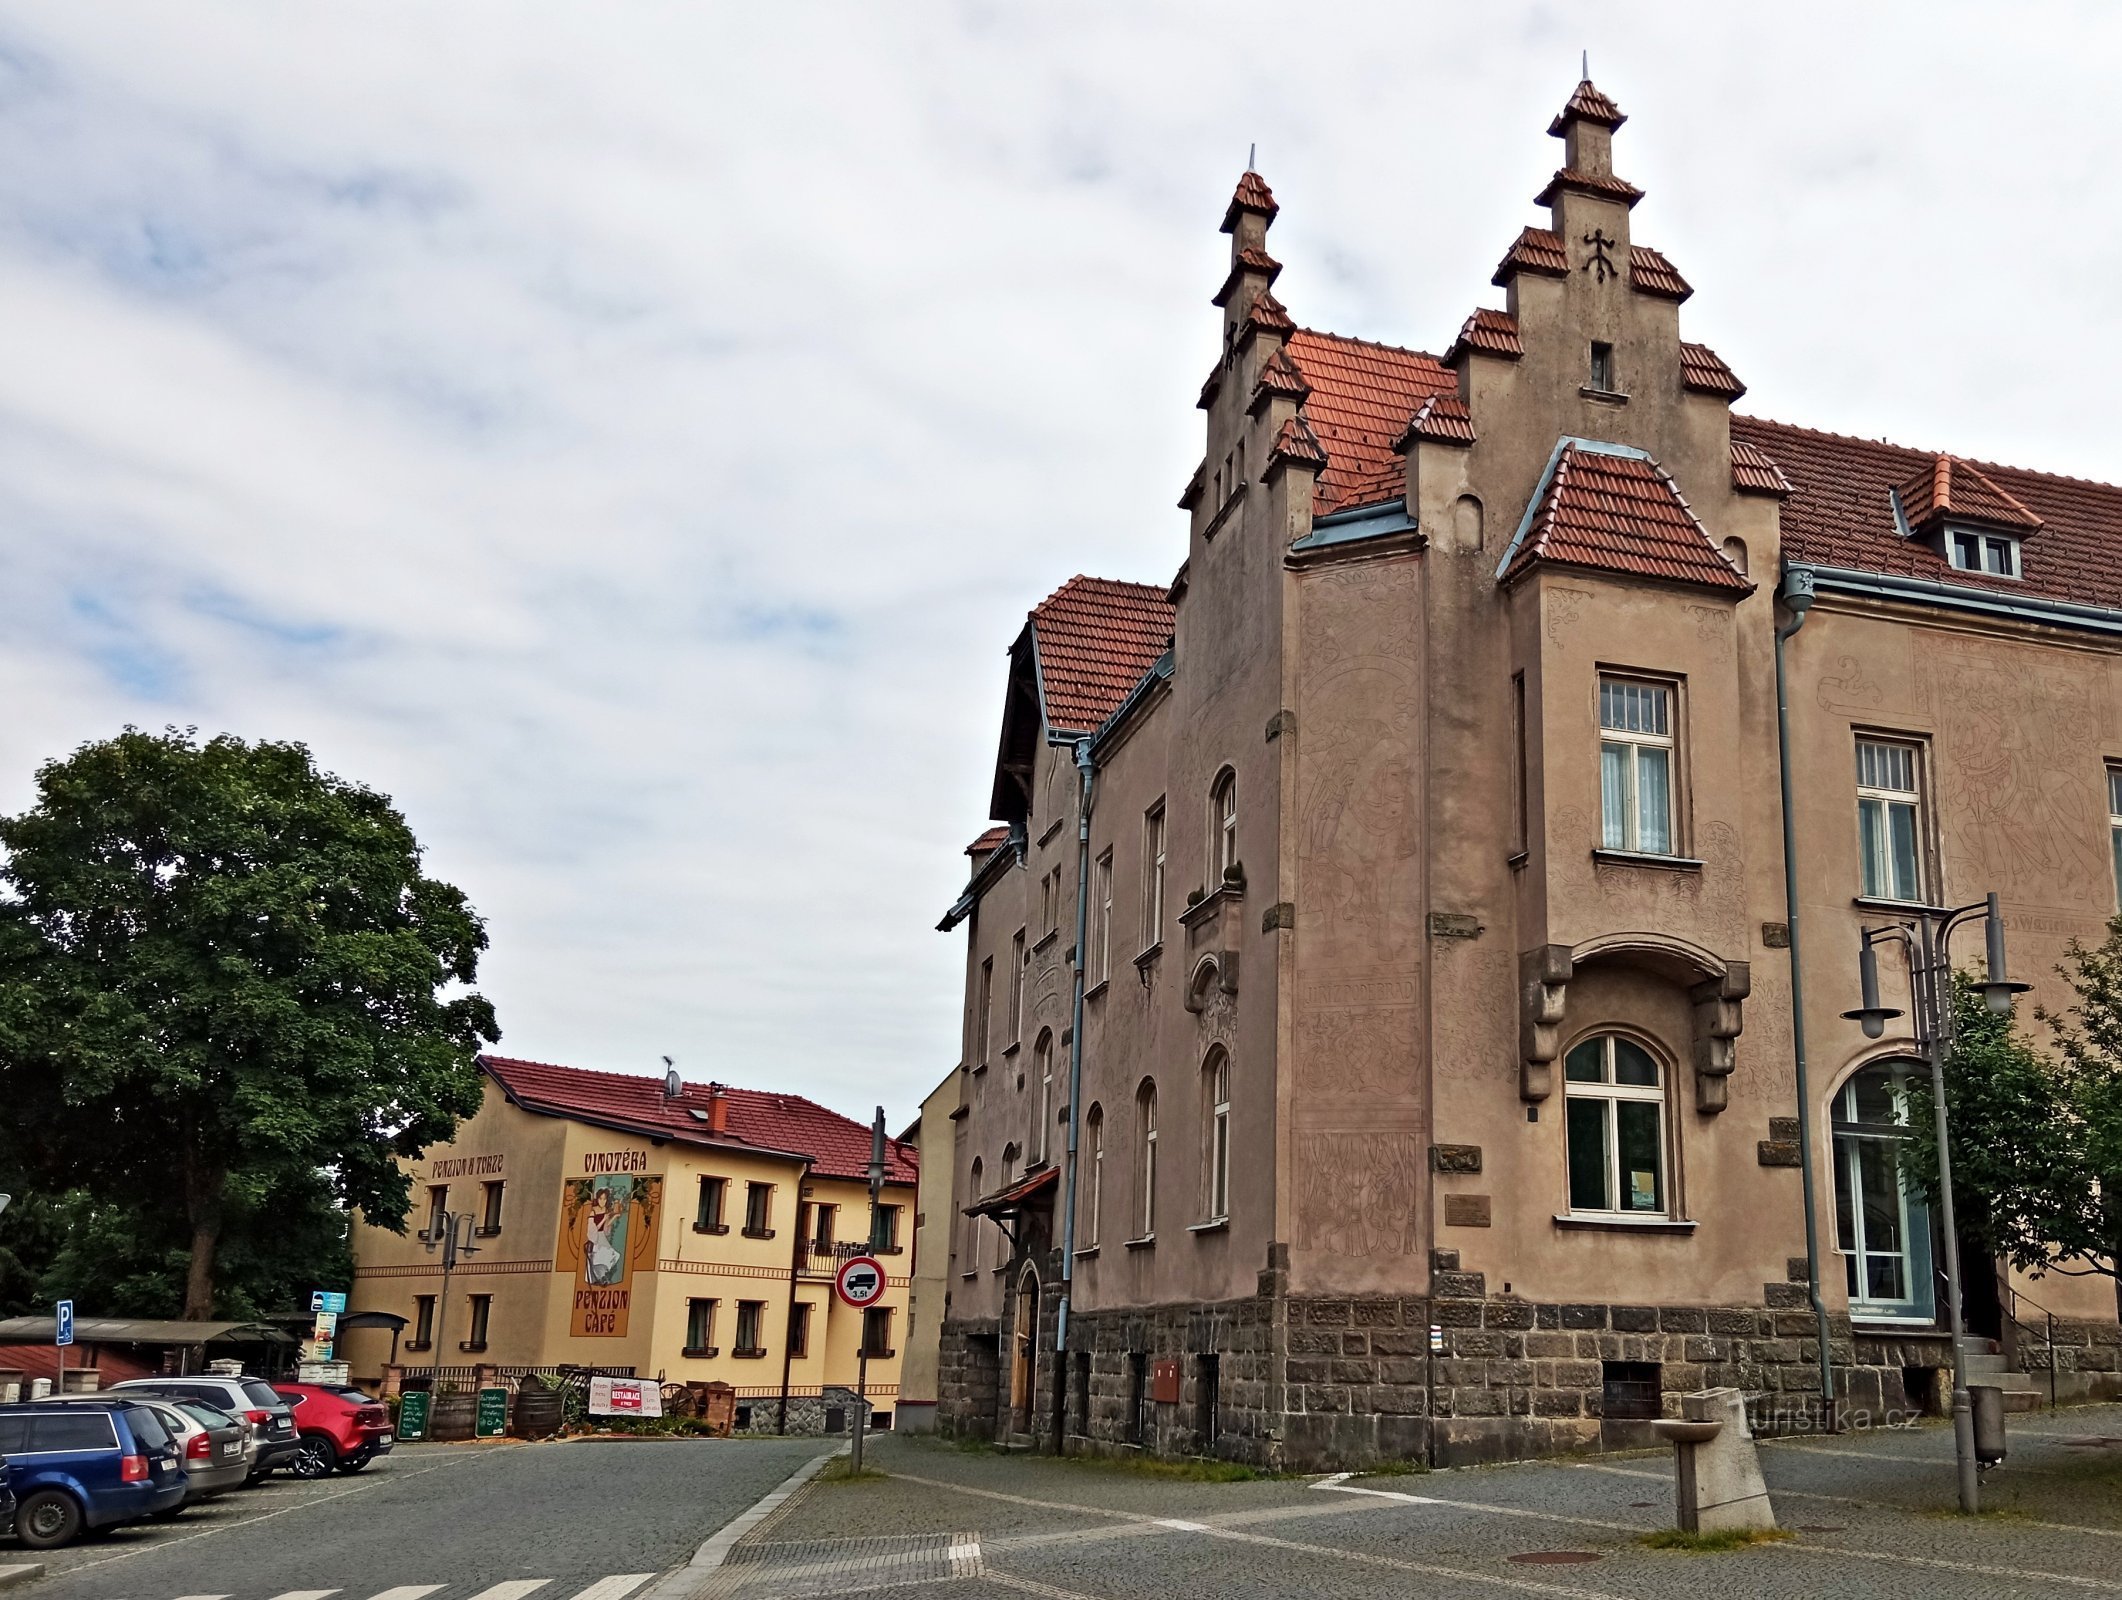 Pháo đài - Hlinsko ở Bohemia